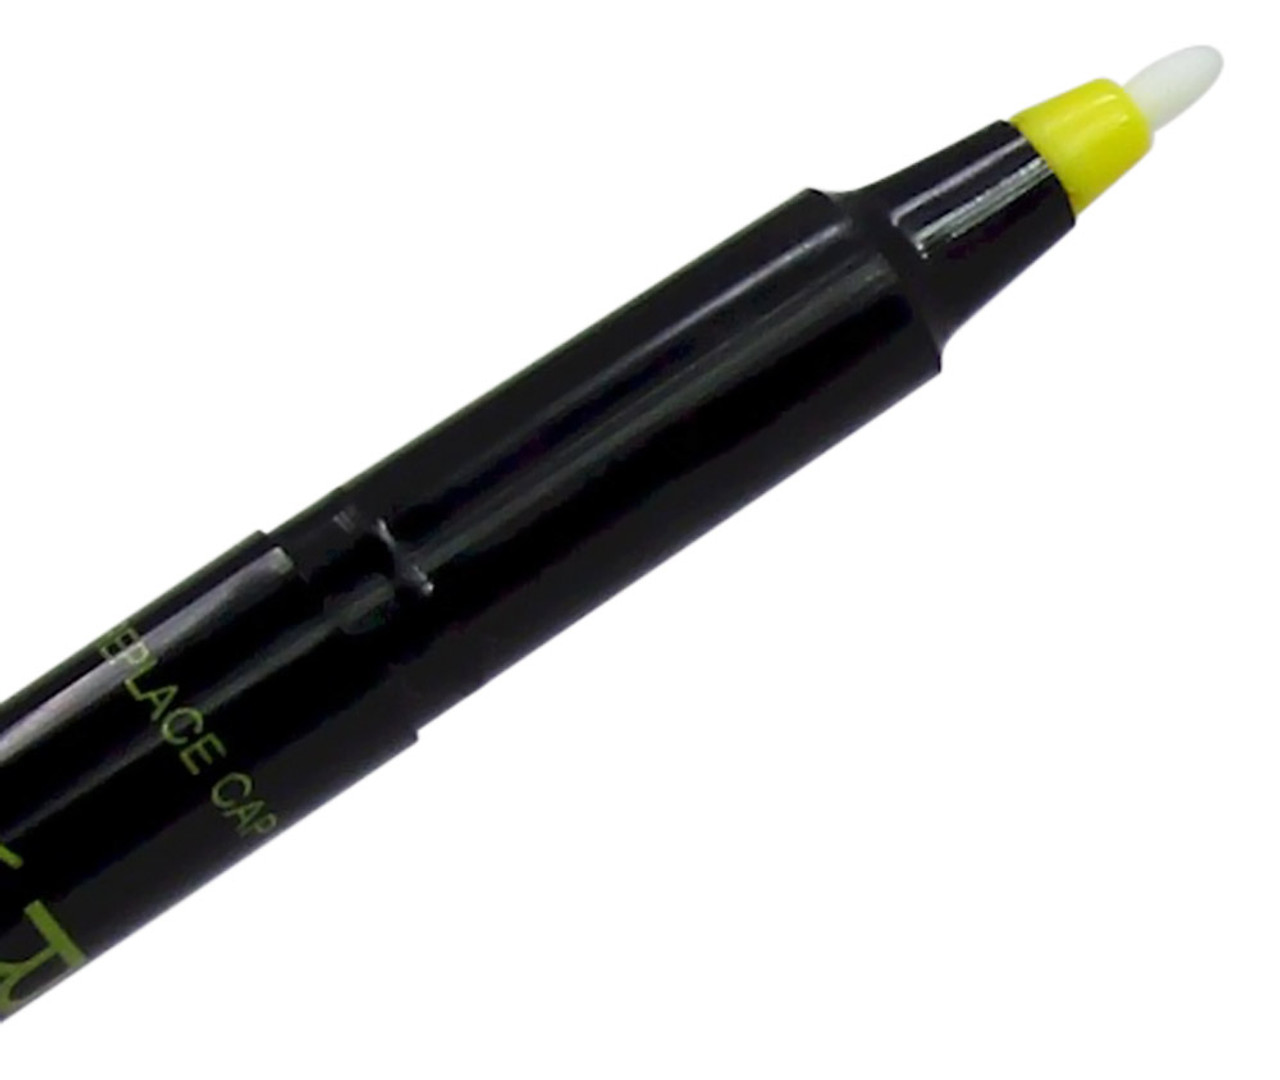 Color Pen®, 18 Pack